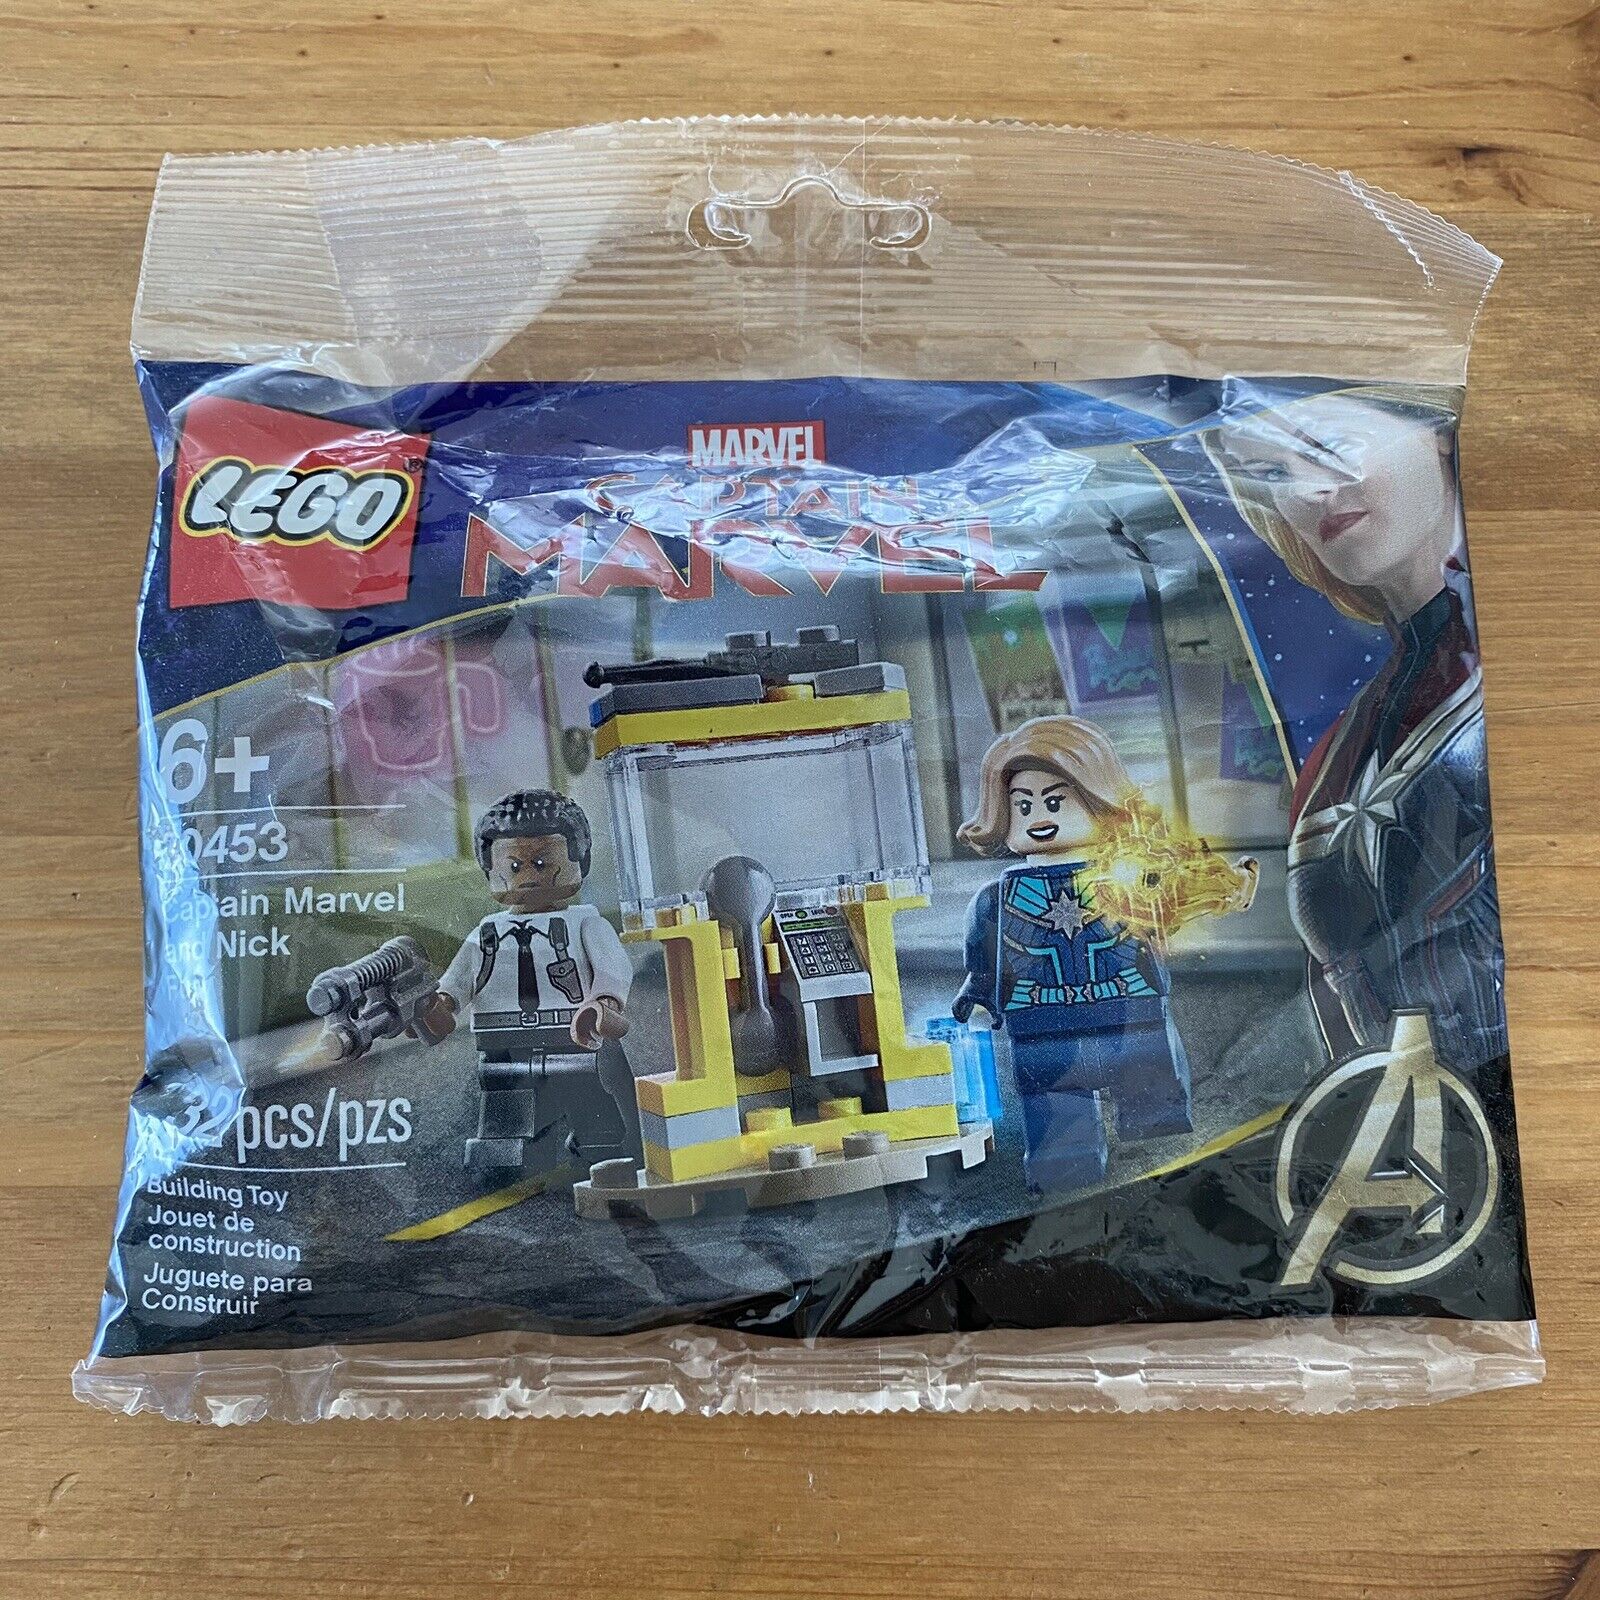 LEGO MARVEL Avengers 30453 Captain Marvel & Nick Fury - Polybag - Sealed - New